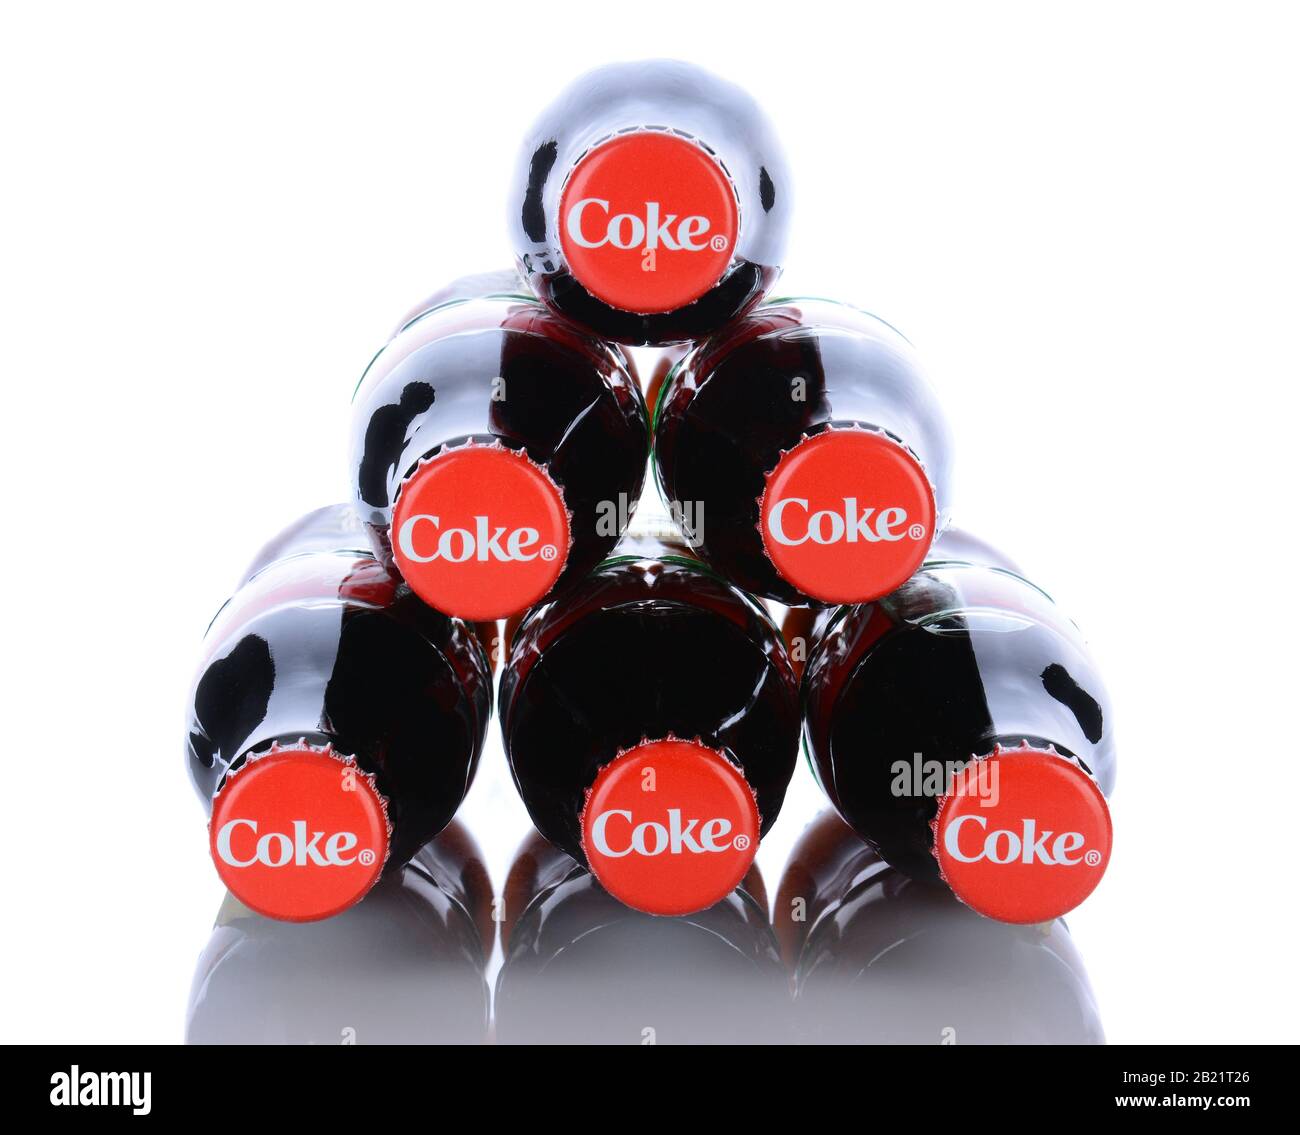 Irvine, CA - 29 gennaio 2014: 6 bottiglie Coca-Cola Classic. Coca-Cola è una delle bevande gassate preferite al mondo. Foto Stock